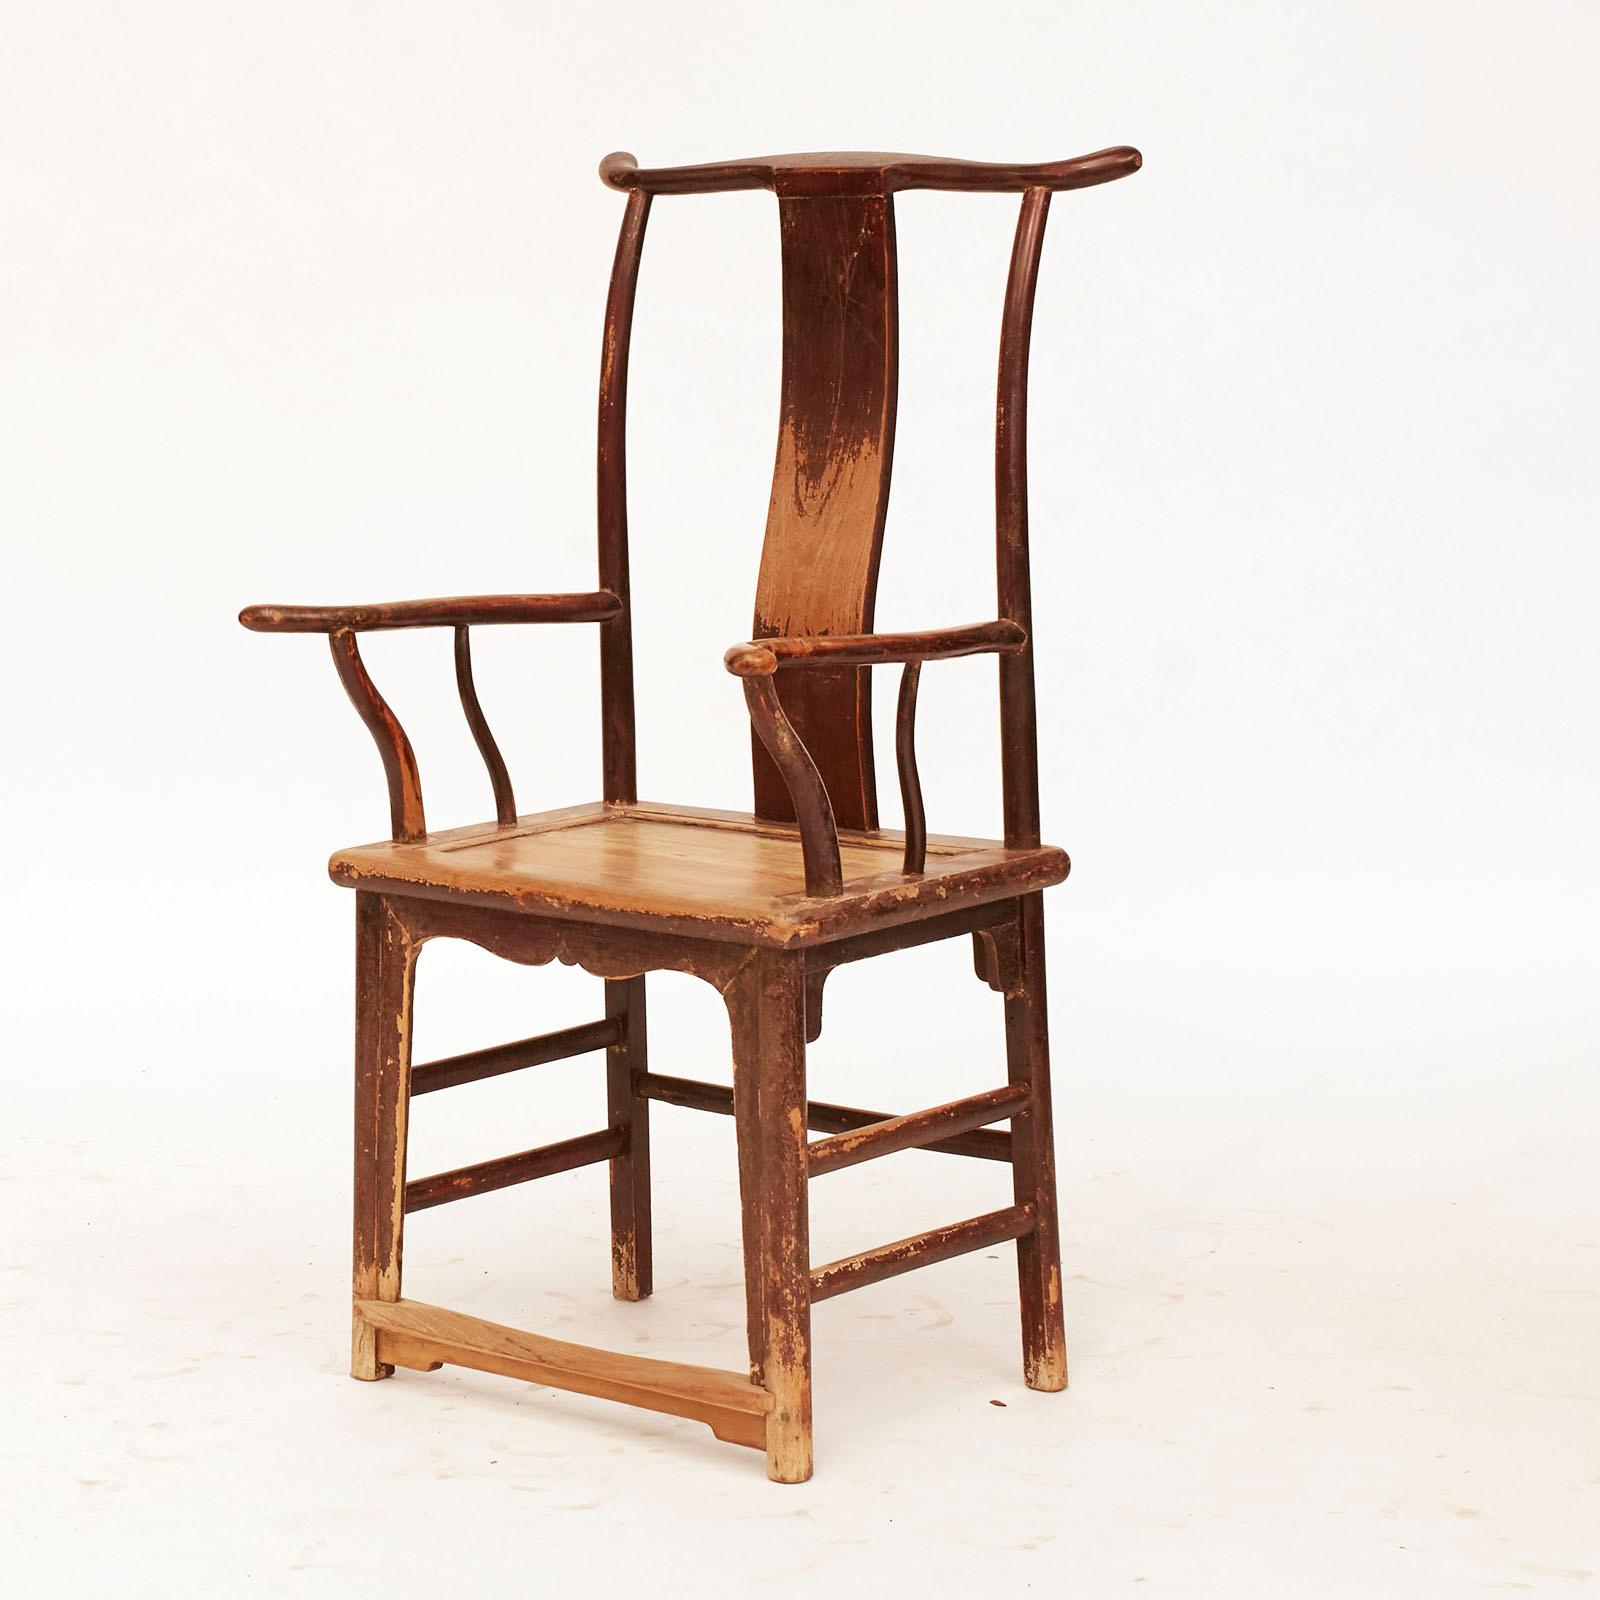 Une paire de fauteuils chinois Scholars, vers les années 1800, en bois d'orme avec laque d'origine de Bourgogne, dossier en forme de joug classique. Obtenez une usure chaude et une patine.